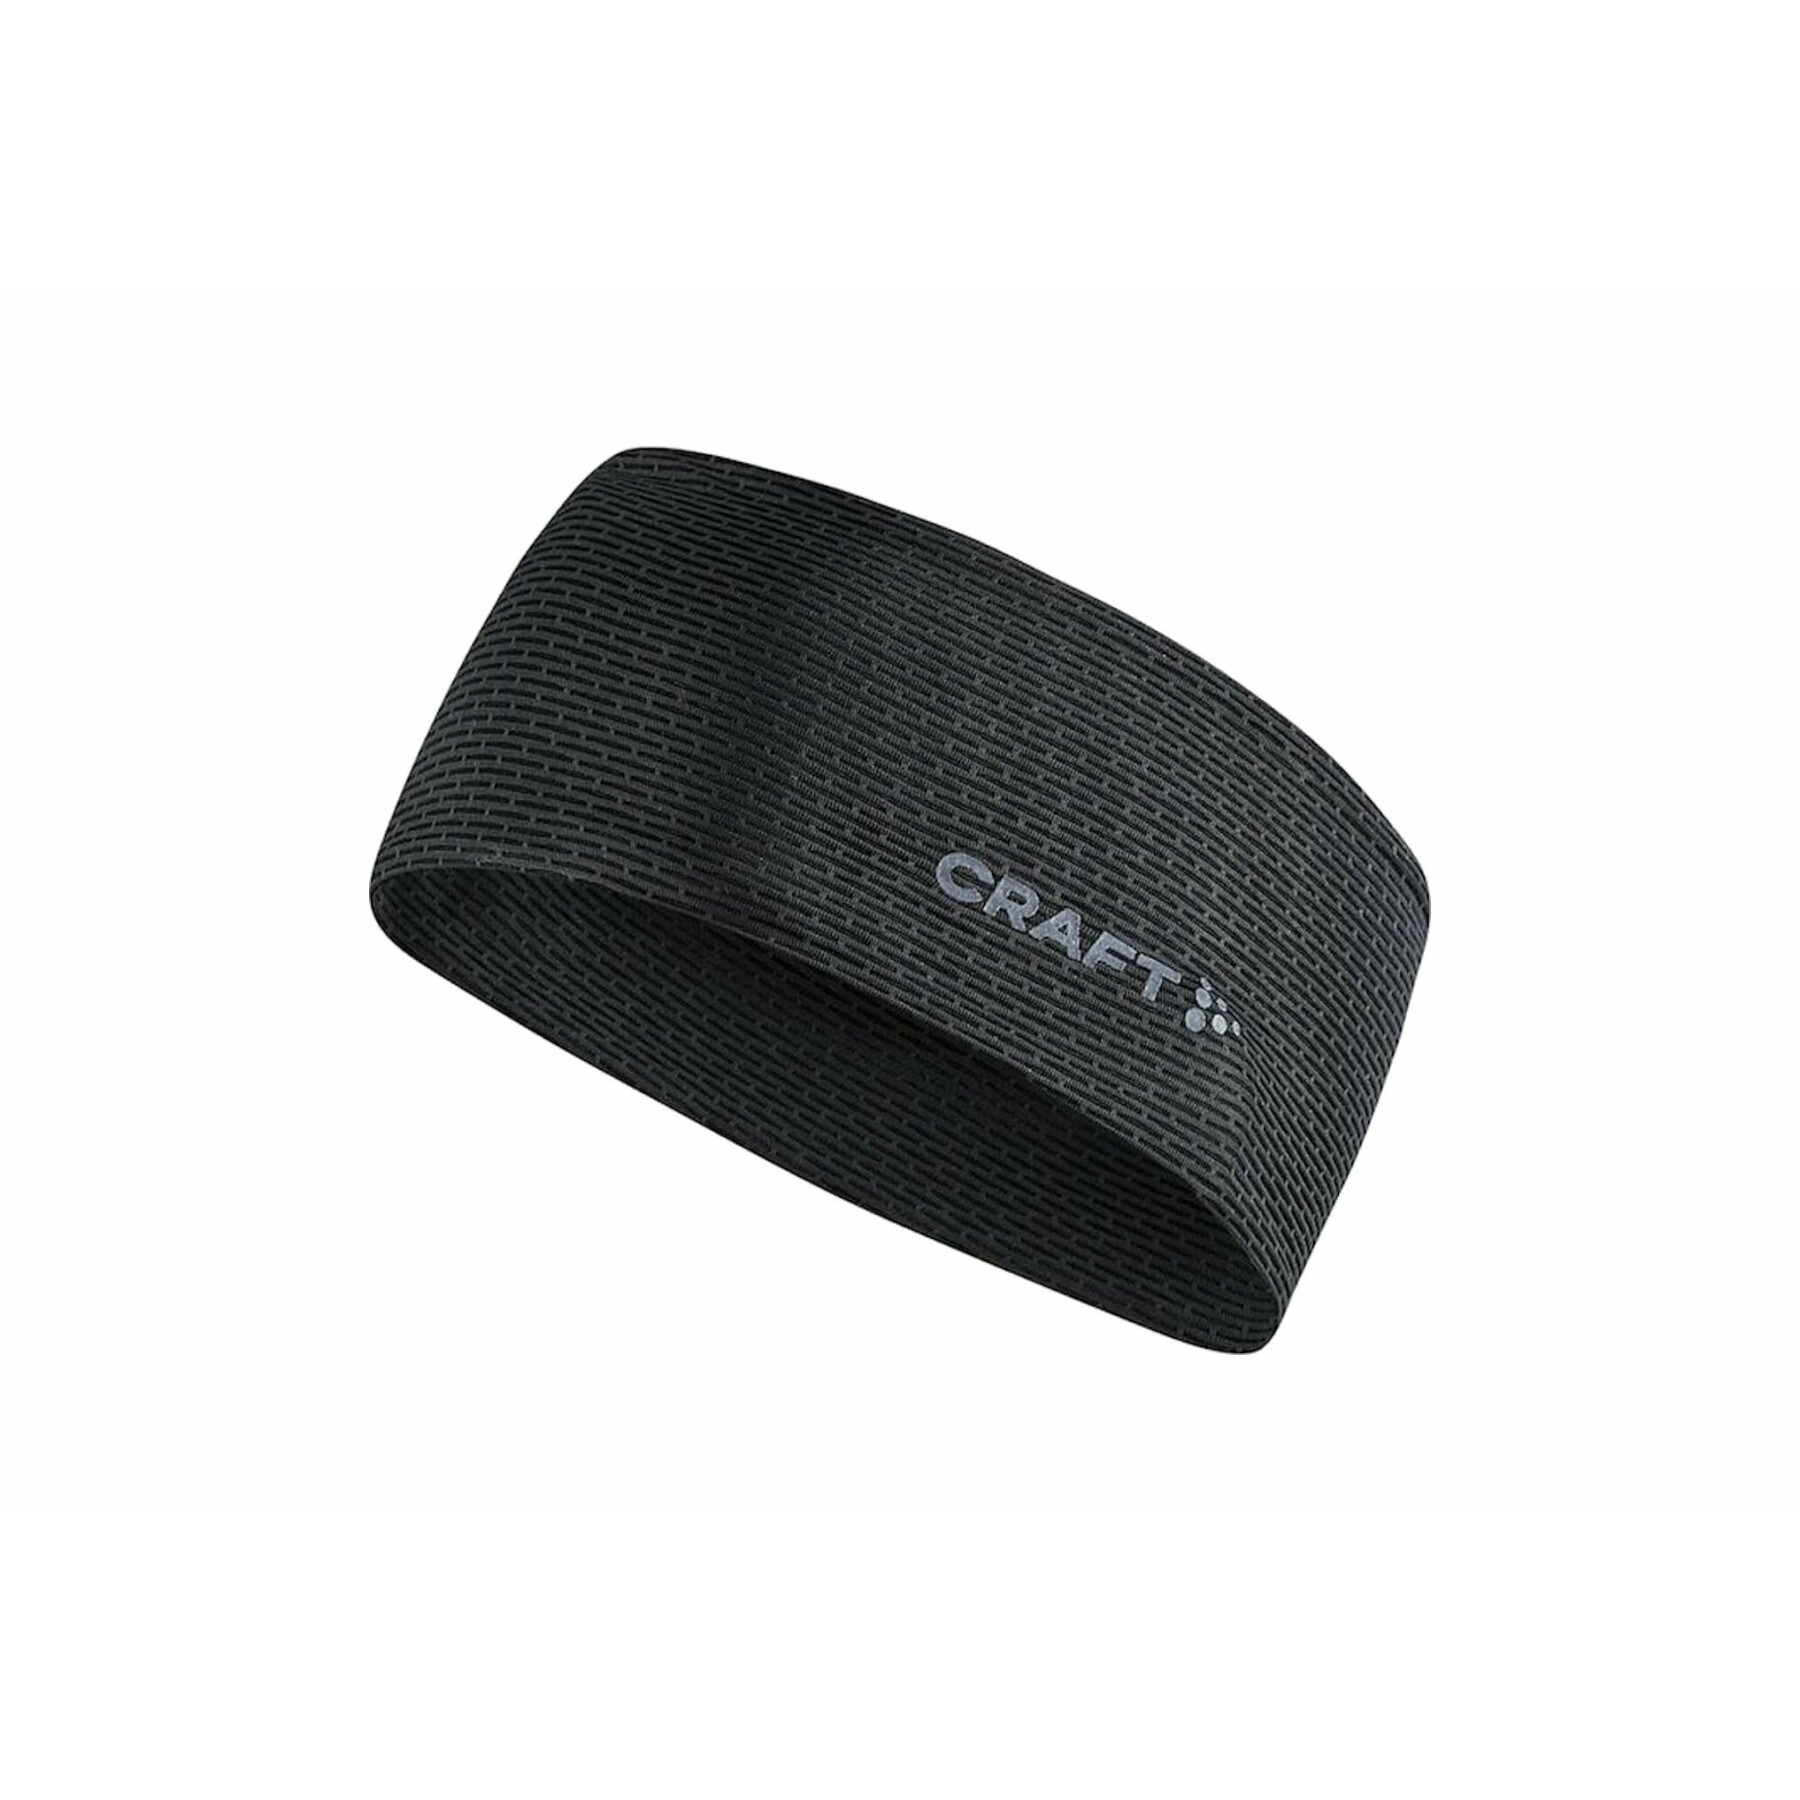 Headband Craft mesh nano weight